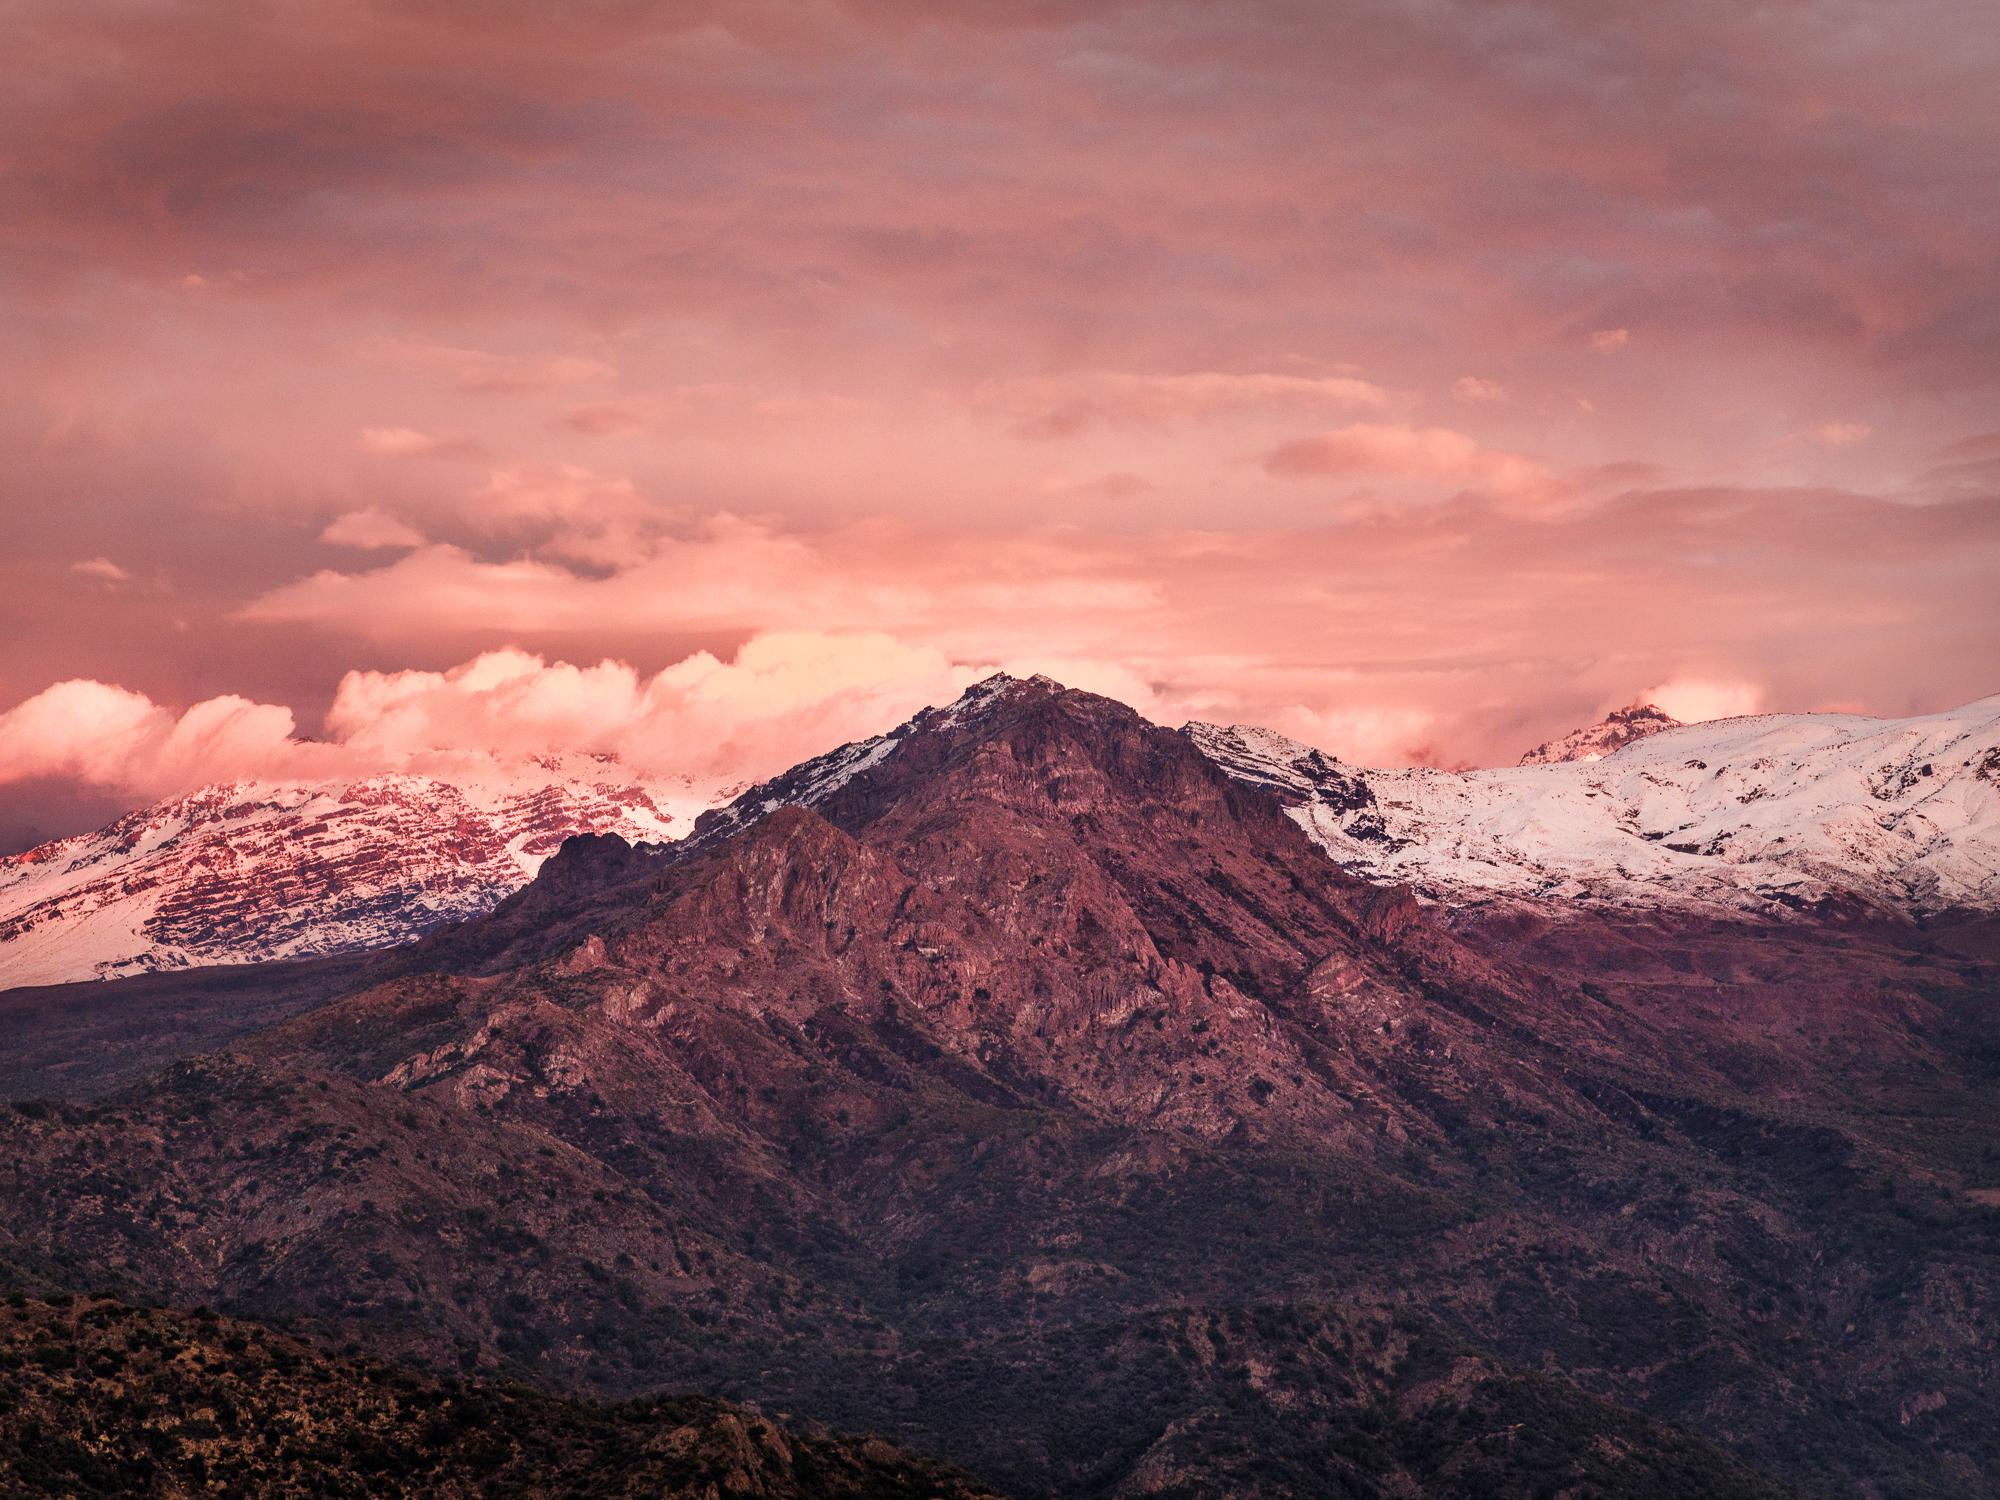 Cordillera I Cauquenes. Landscape Pigment Prints. From the Series Cordillera